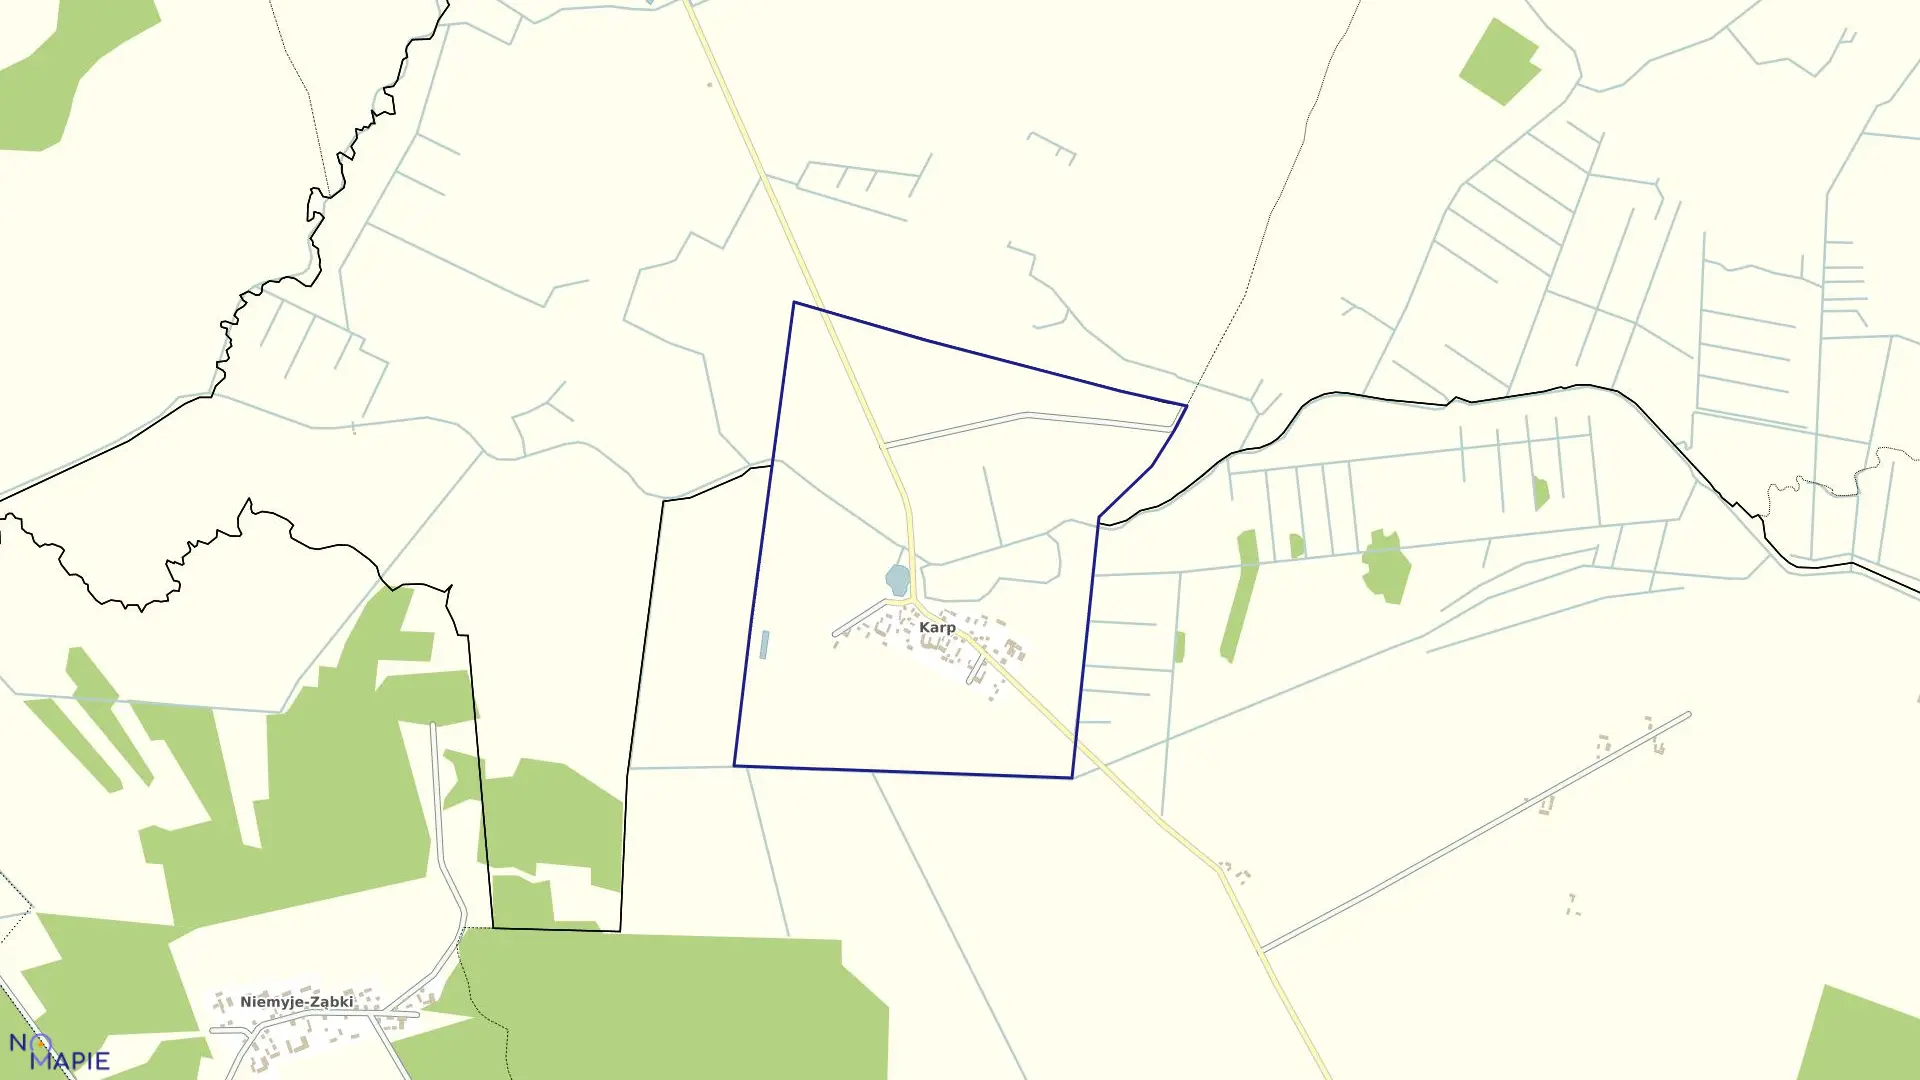 Mapa obrębu KARP w gminie Rudka